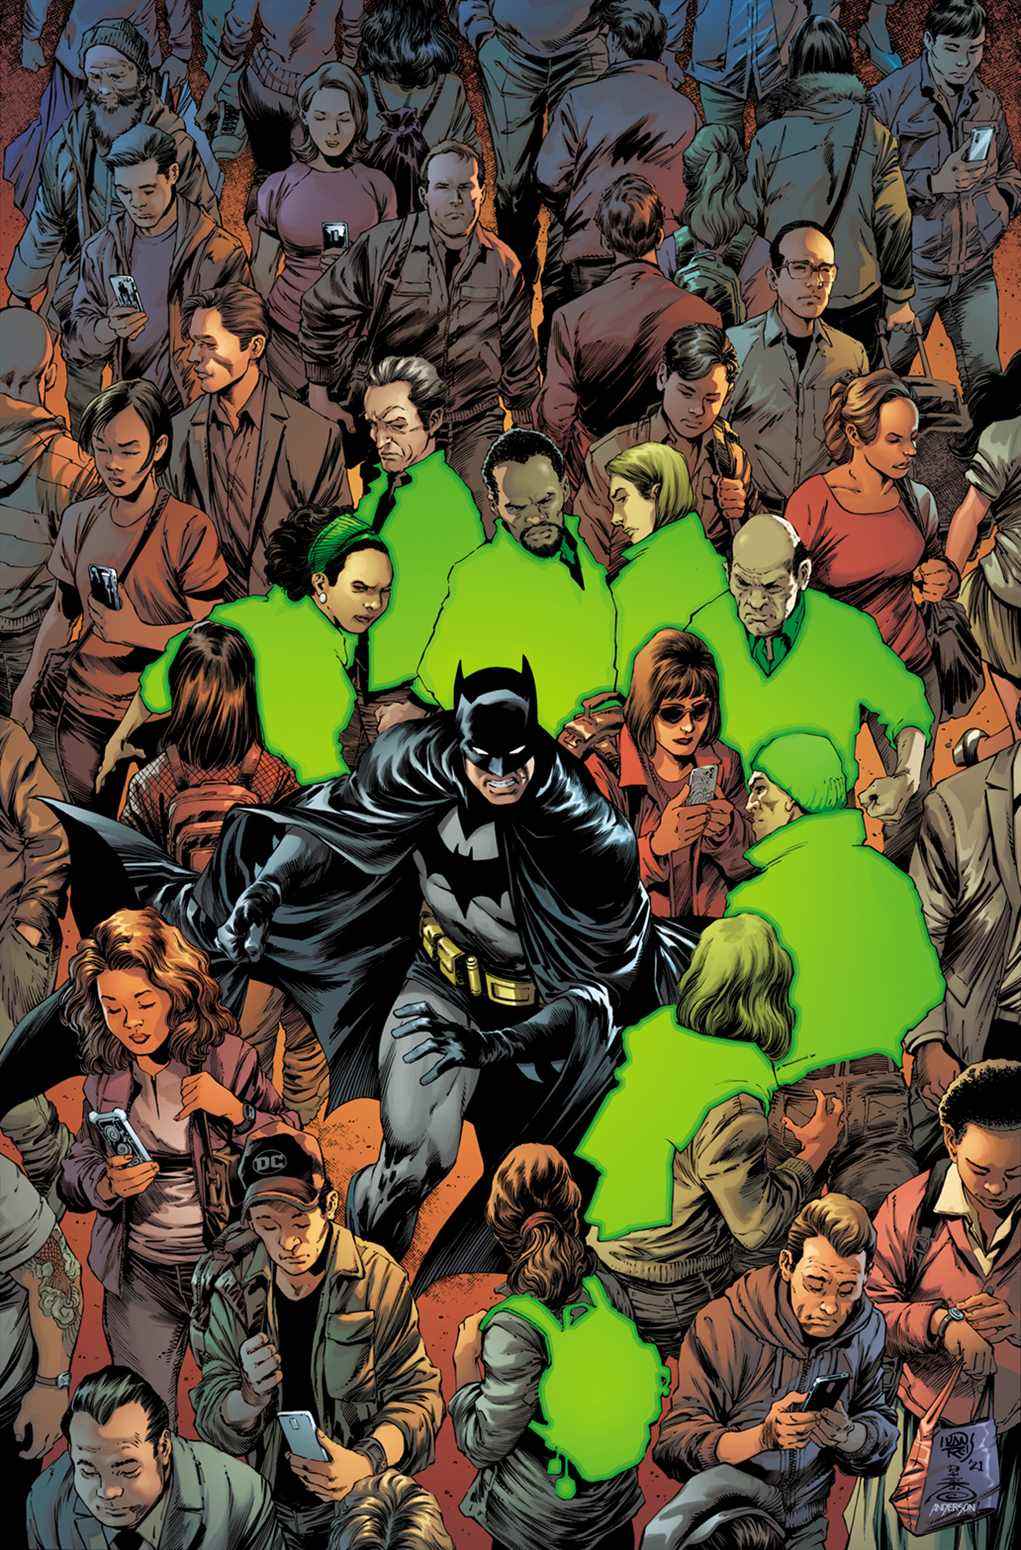 Couverture de Detective Comics #1059